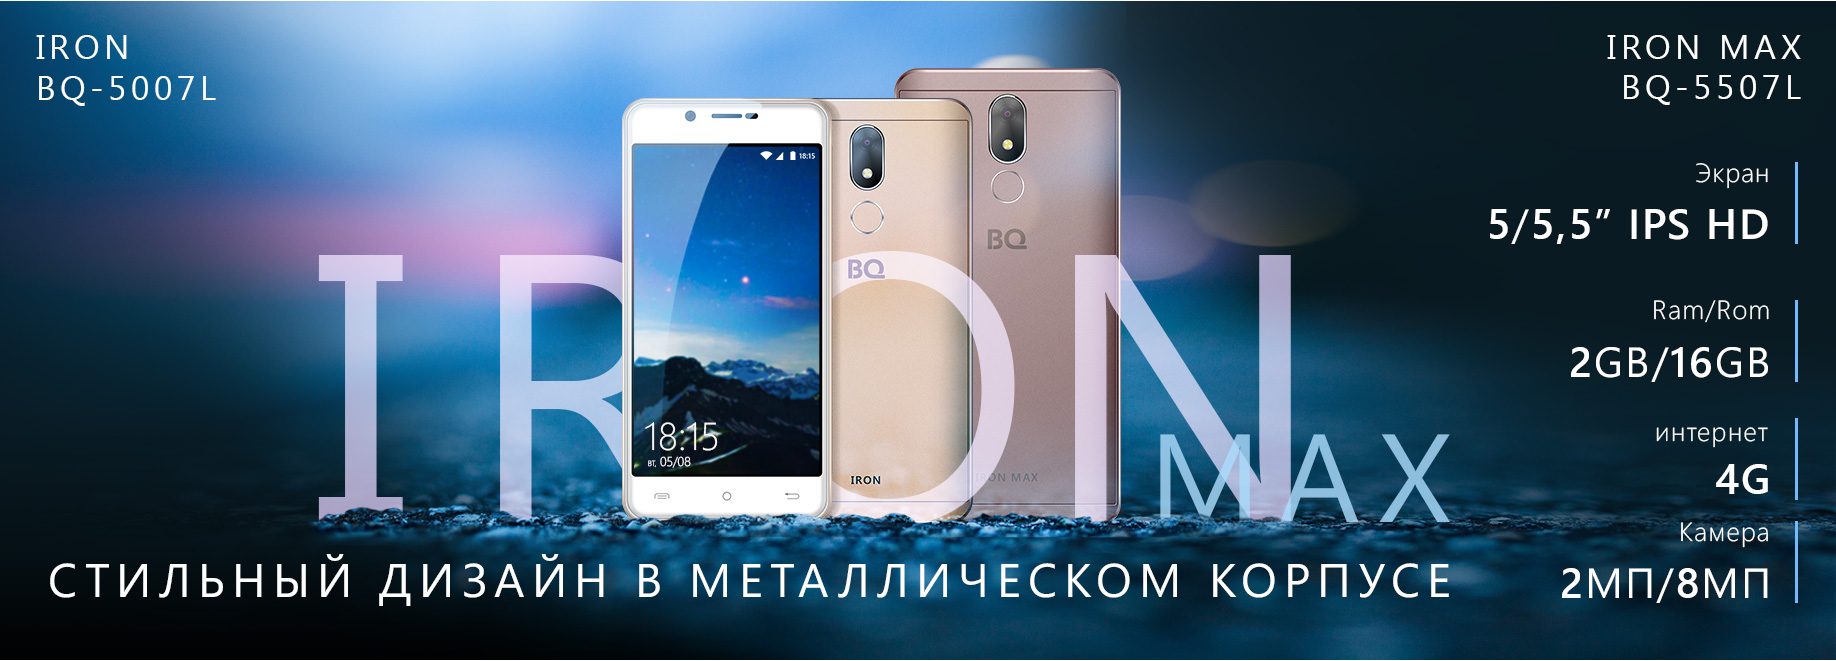 Новый смартфон BQ 5507L Iron Max